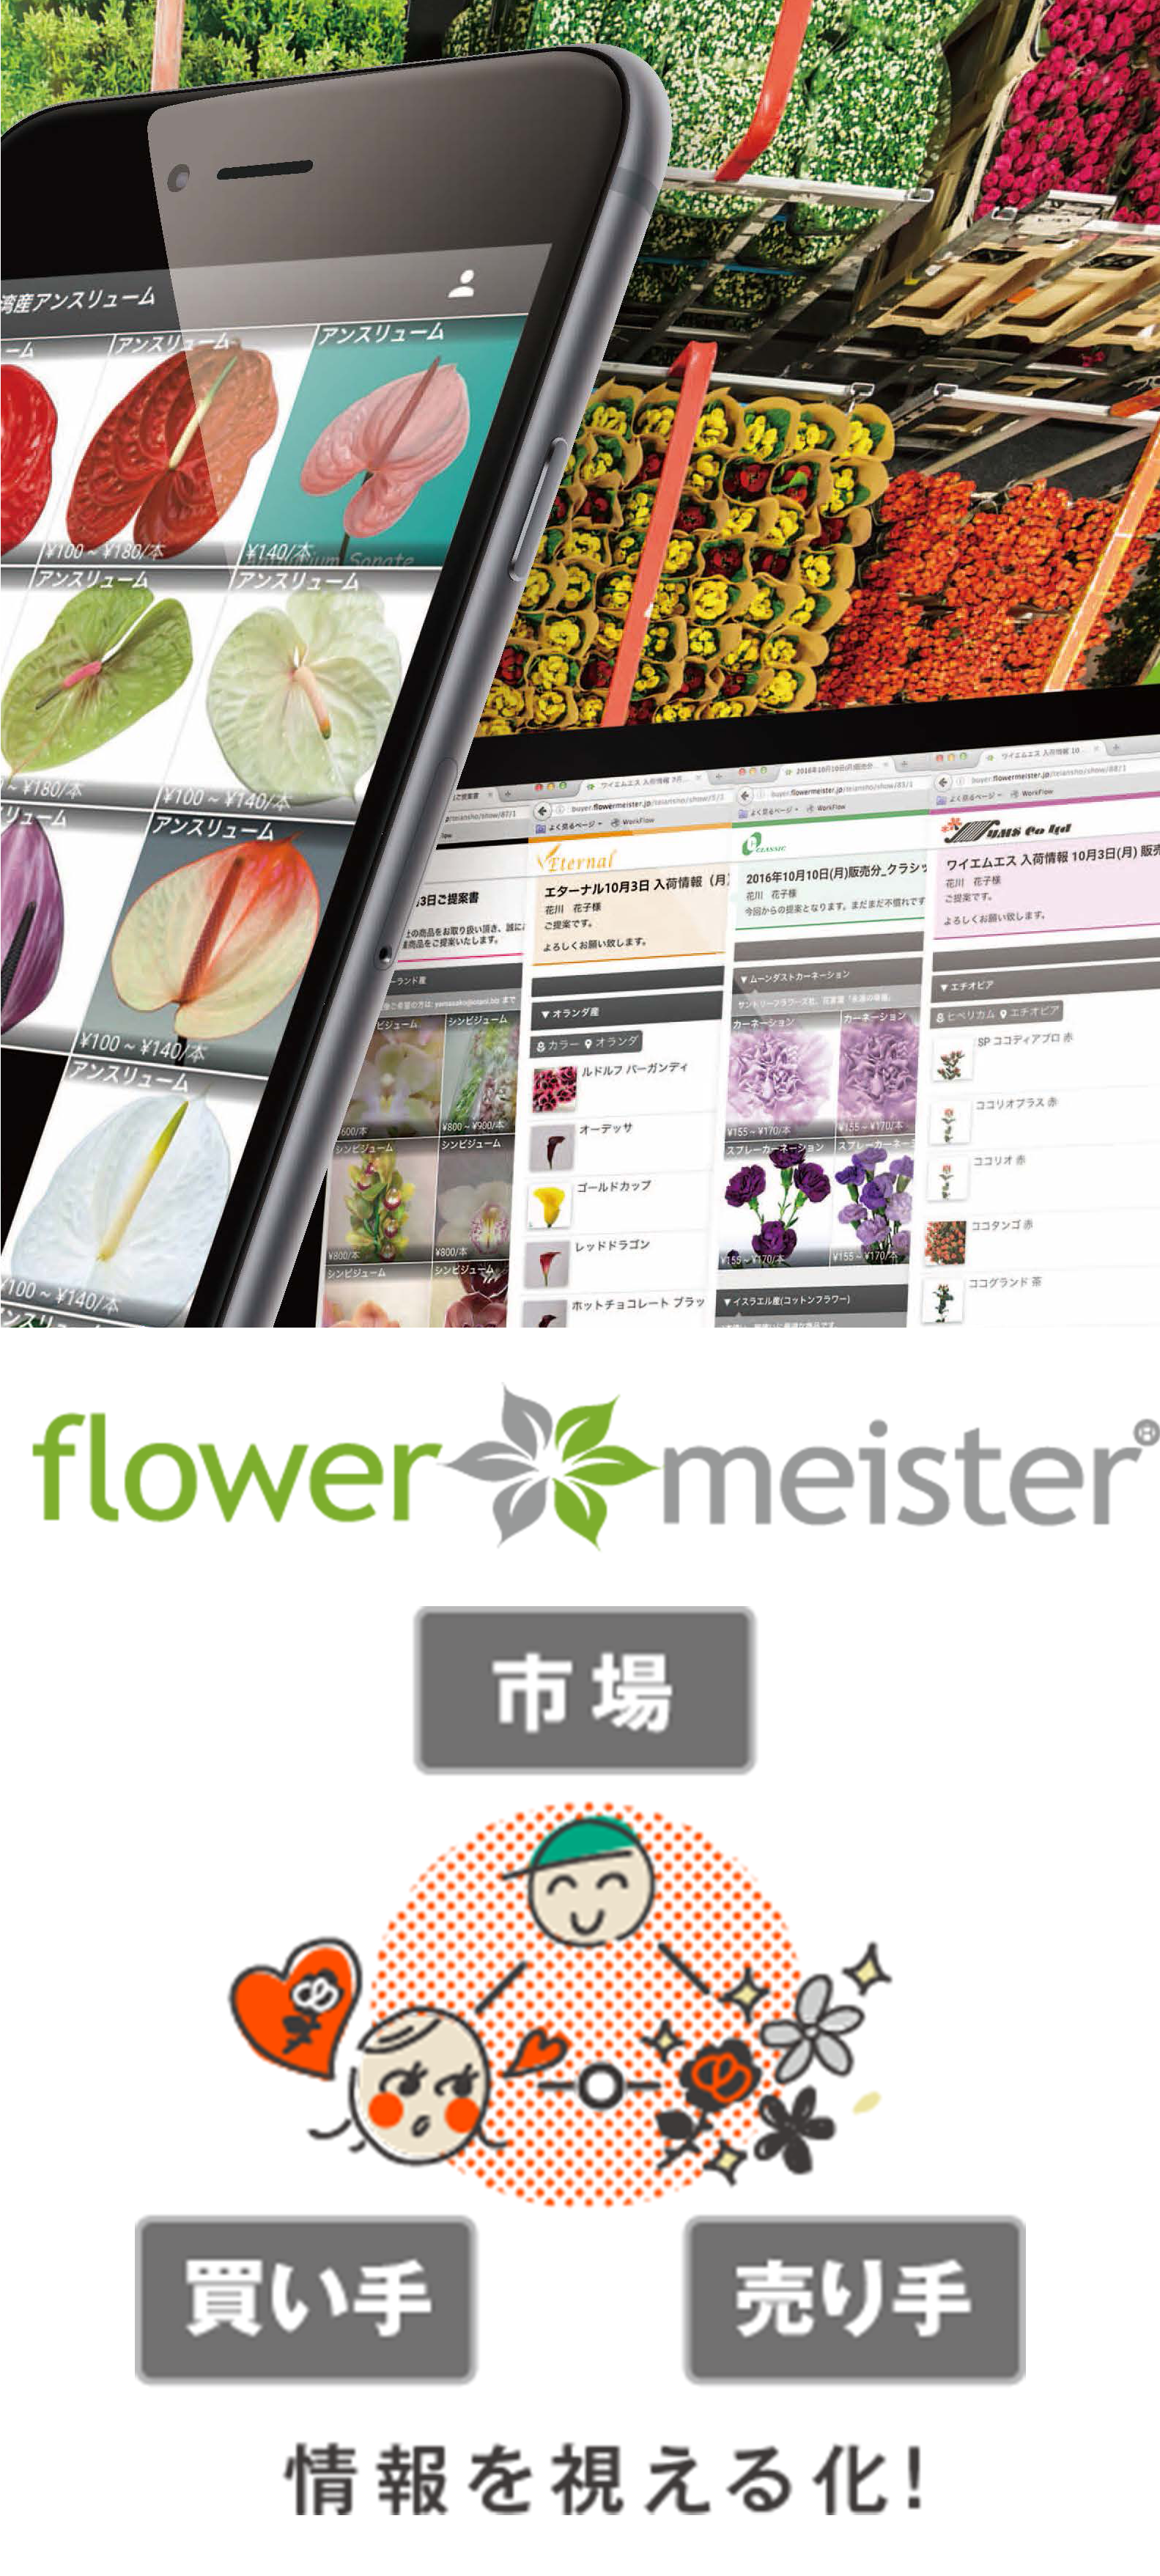 フラワーマイスターのWEB、スマホアプリケーションイメージ画像、フラワーマイスターのロゴ、フラワーマイスターのイメージイラスト